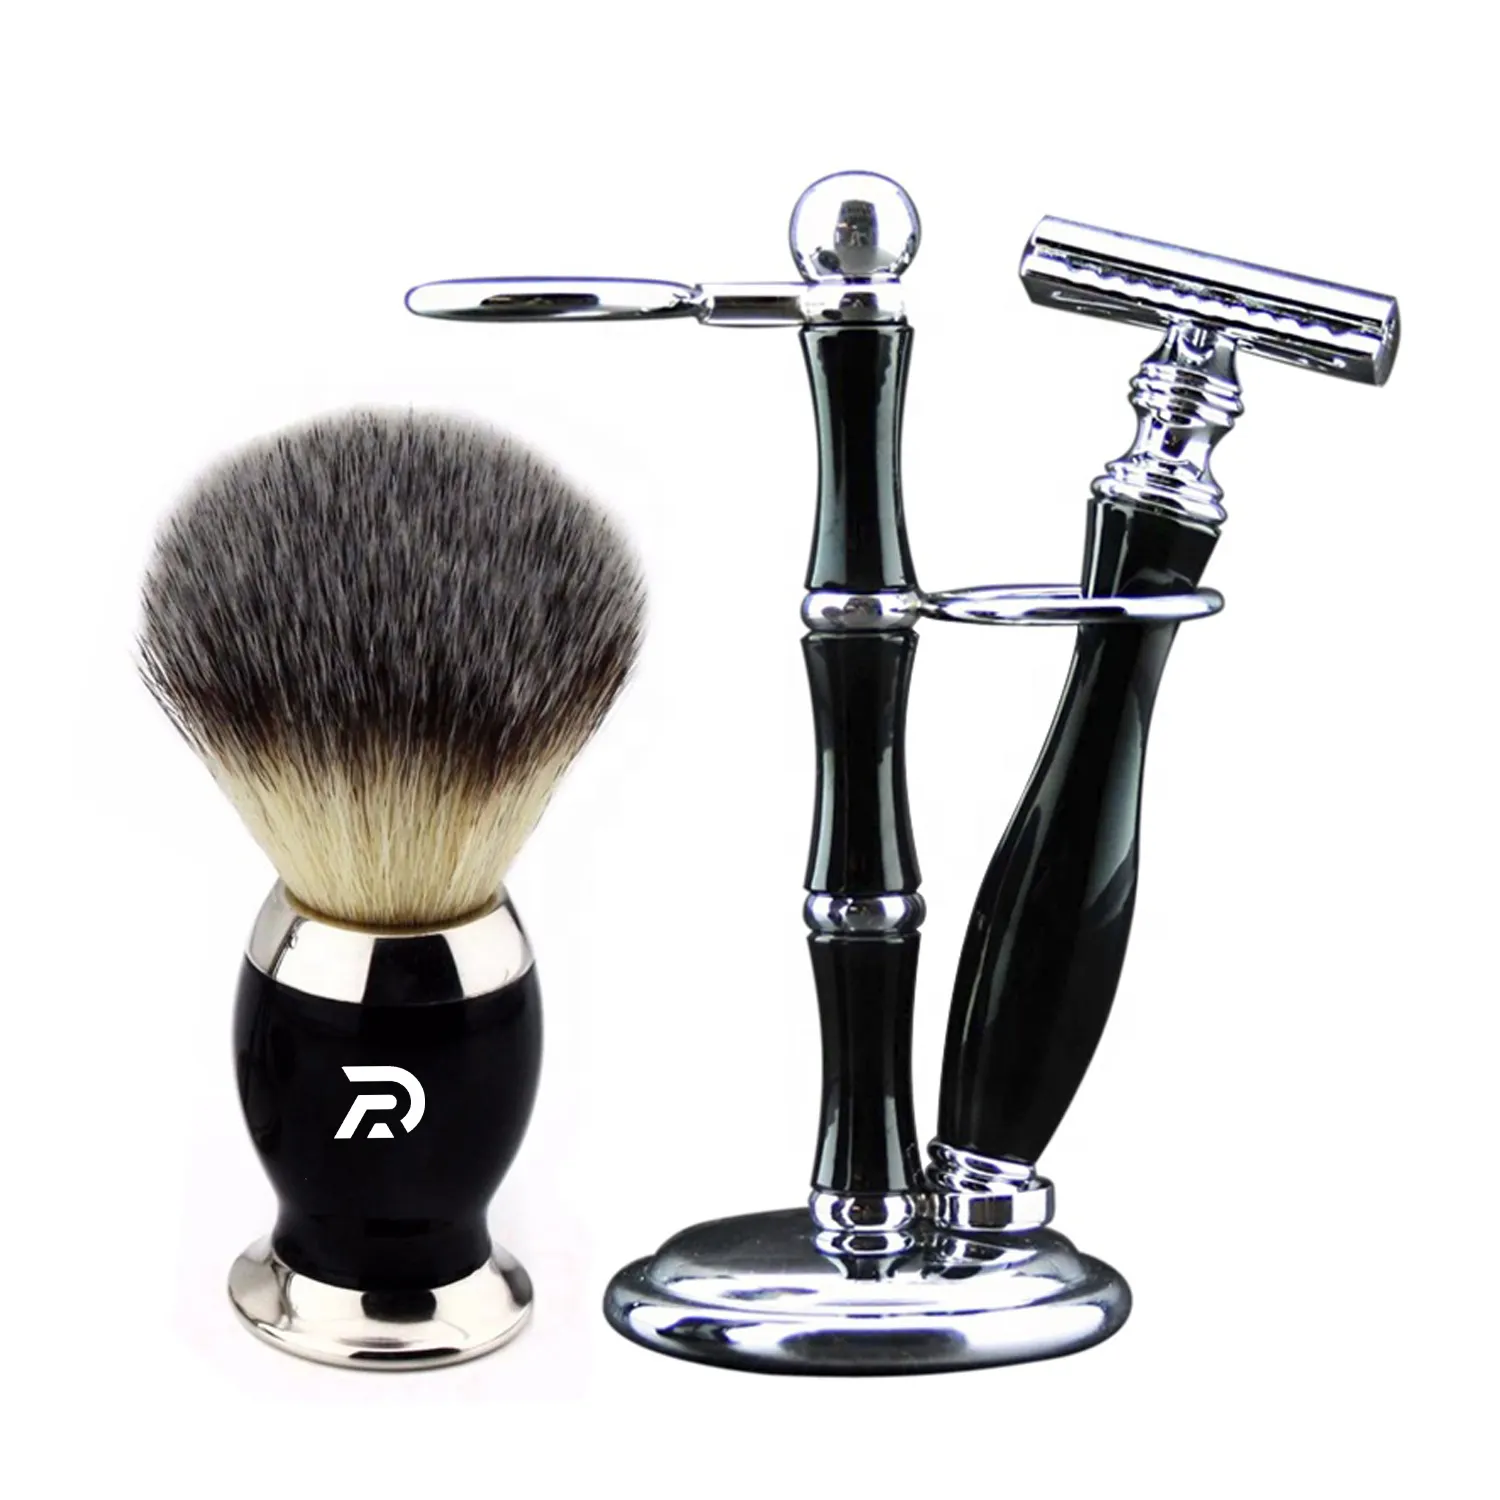 2020 luxury men shaving gift set shaving brush kit Double Edge Safety Razor Wet Shaving for Men Women